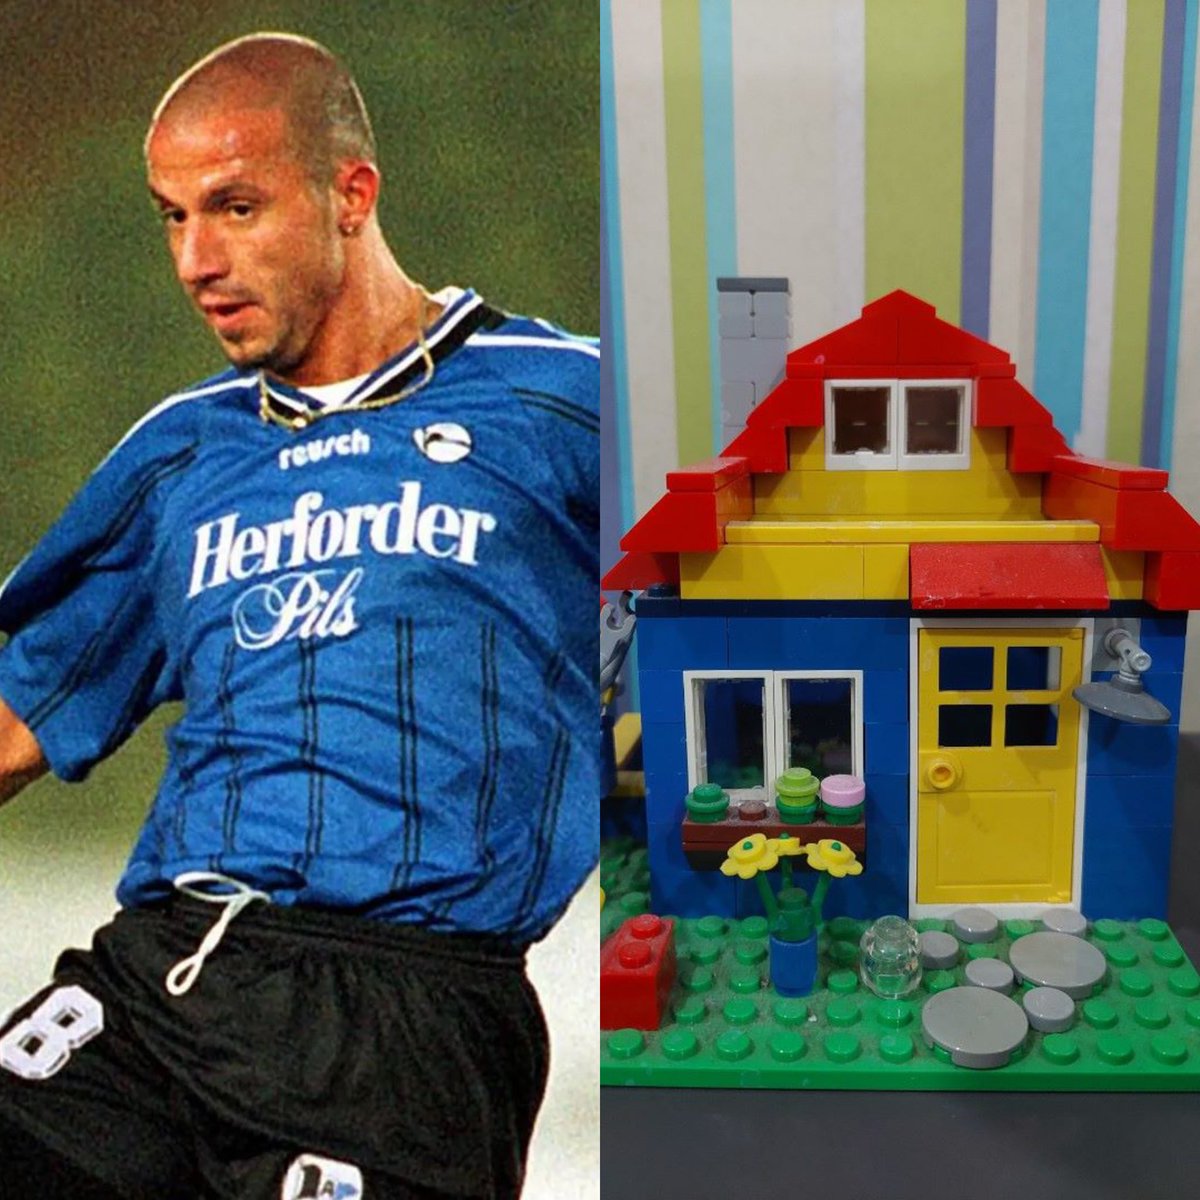 Giuseppe Reina, 1996 yılında Arminia Bielefeld’e transfer olurken, sözleşmesine her yıl kendisi için bir ev yapılması maddesi koydurdu. Ancak Reina evin boyutunu belirtmeyince kulüp, ona 3 yıllık kontratı boyunca 3 adet lego ev hediye etti.